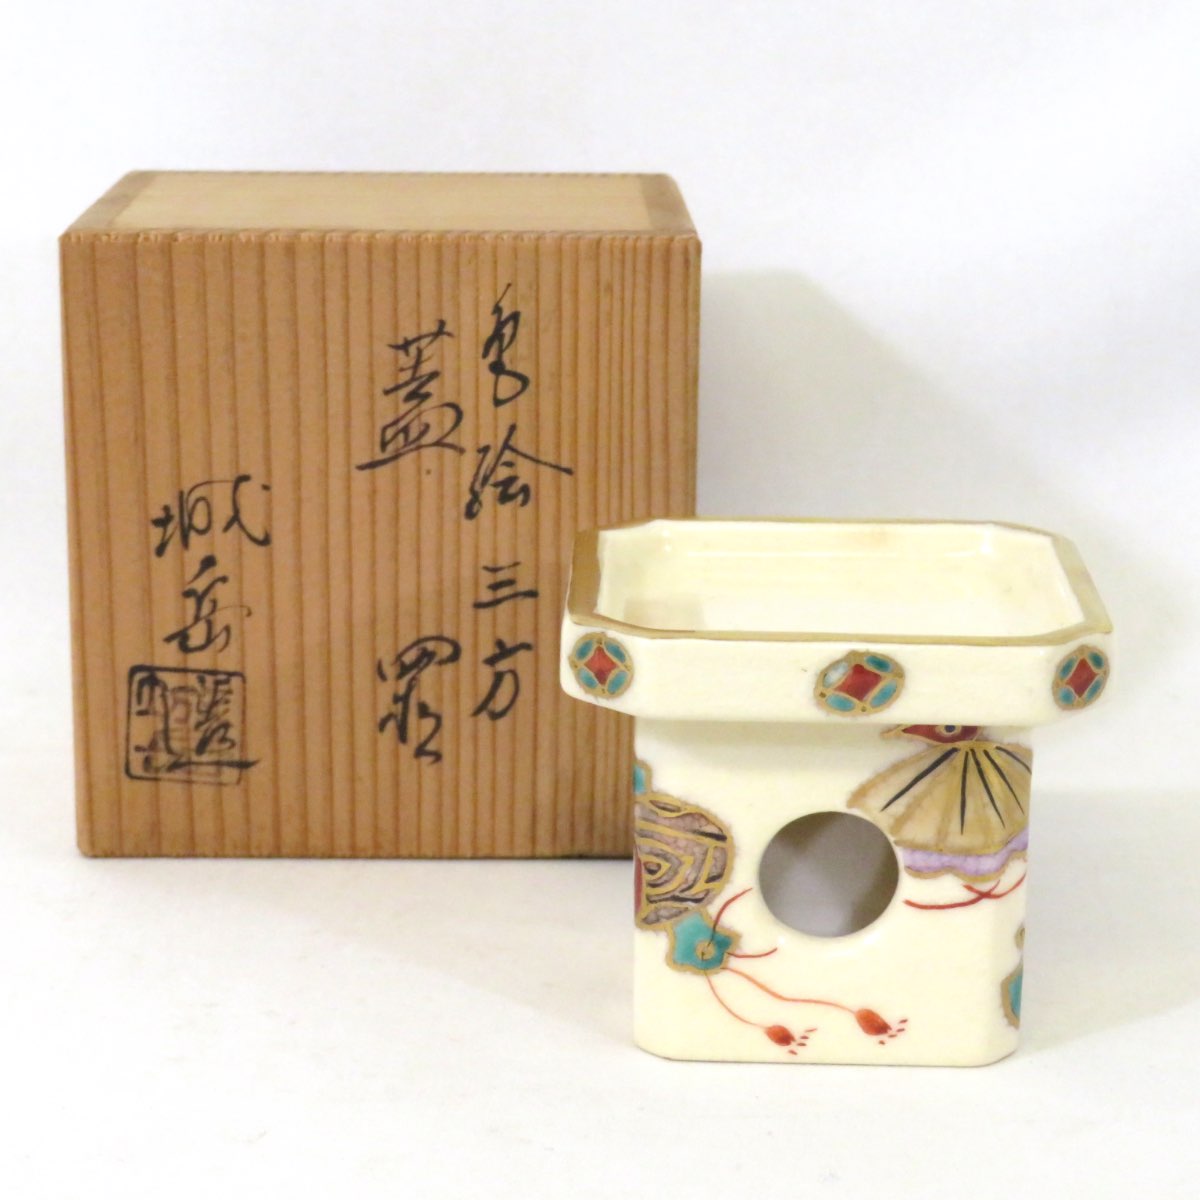 【二月の特売品】平安 橋本城岳作 色絵 三方 蓋置 茶道具【中古 美品】